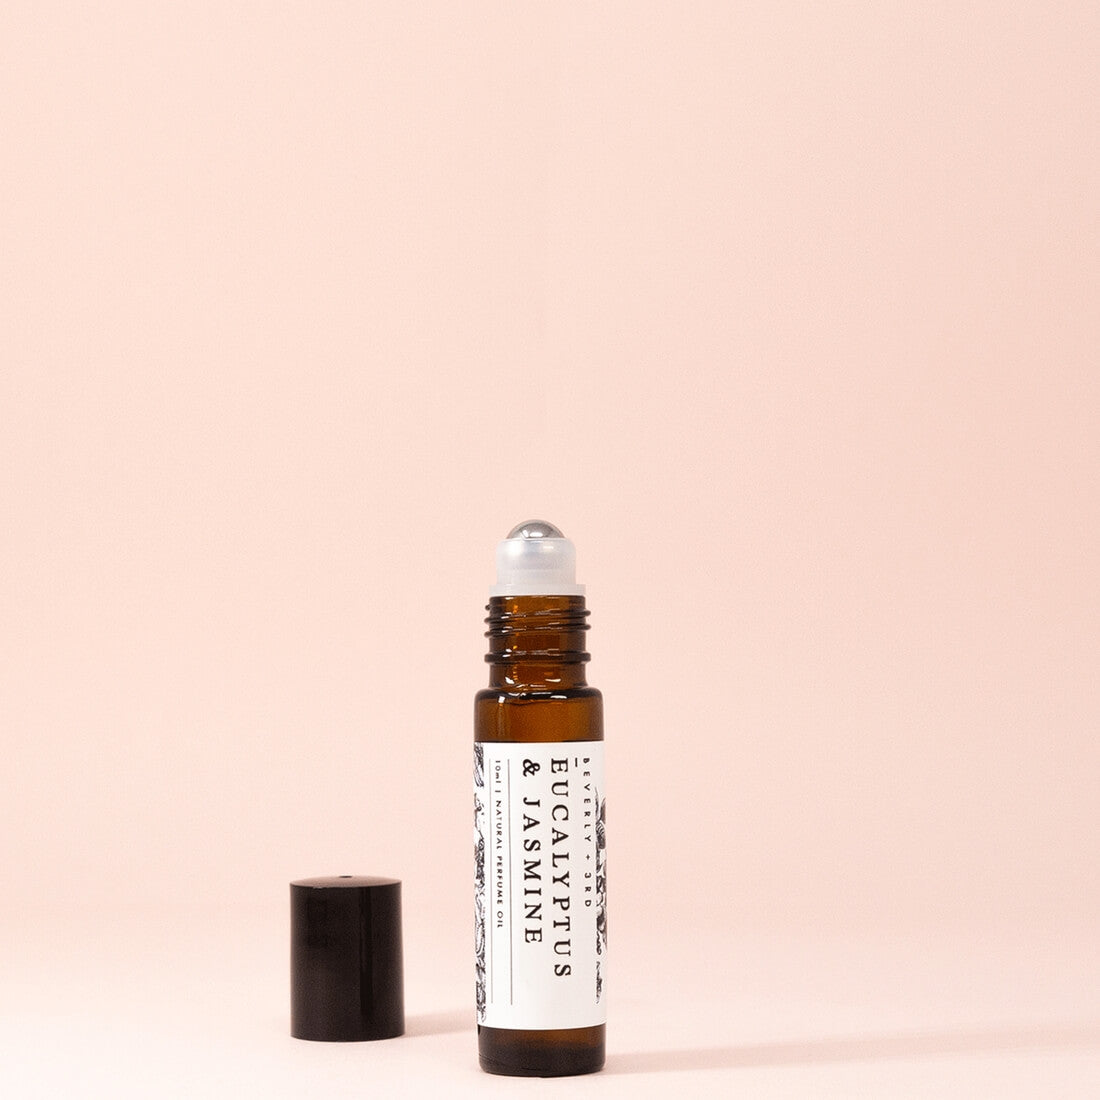 Eucalyptus & Jasmine Natural Roll-on Perfume Oil